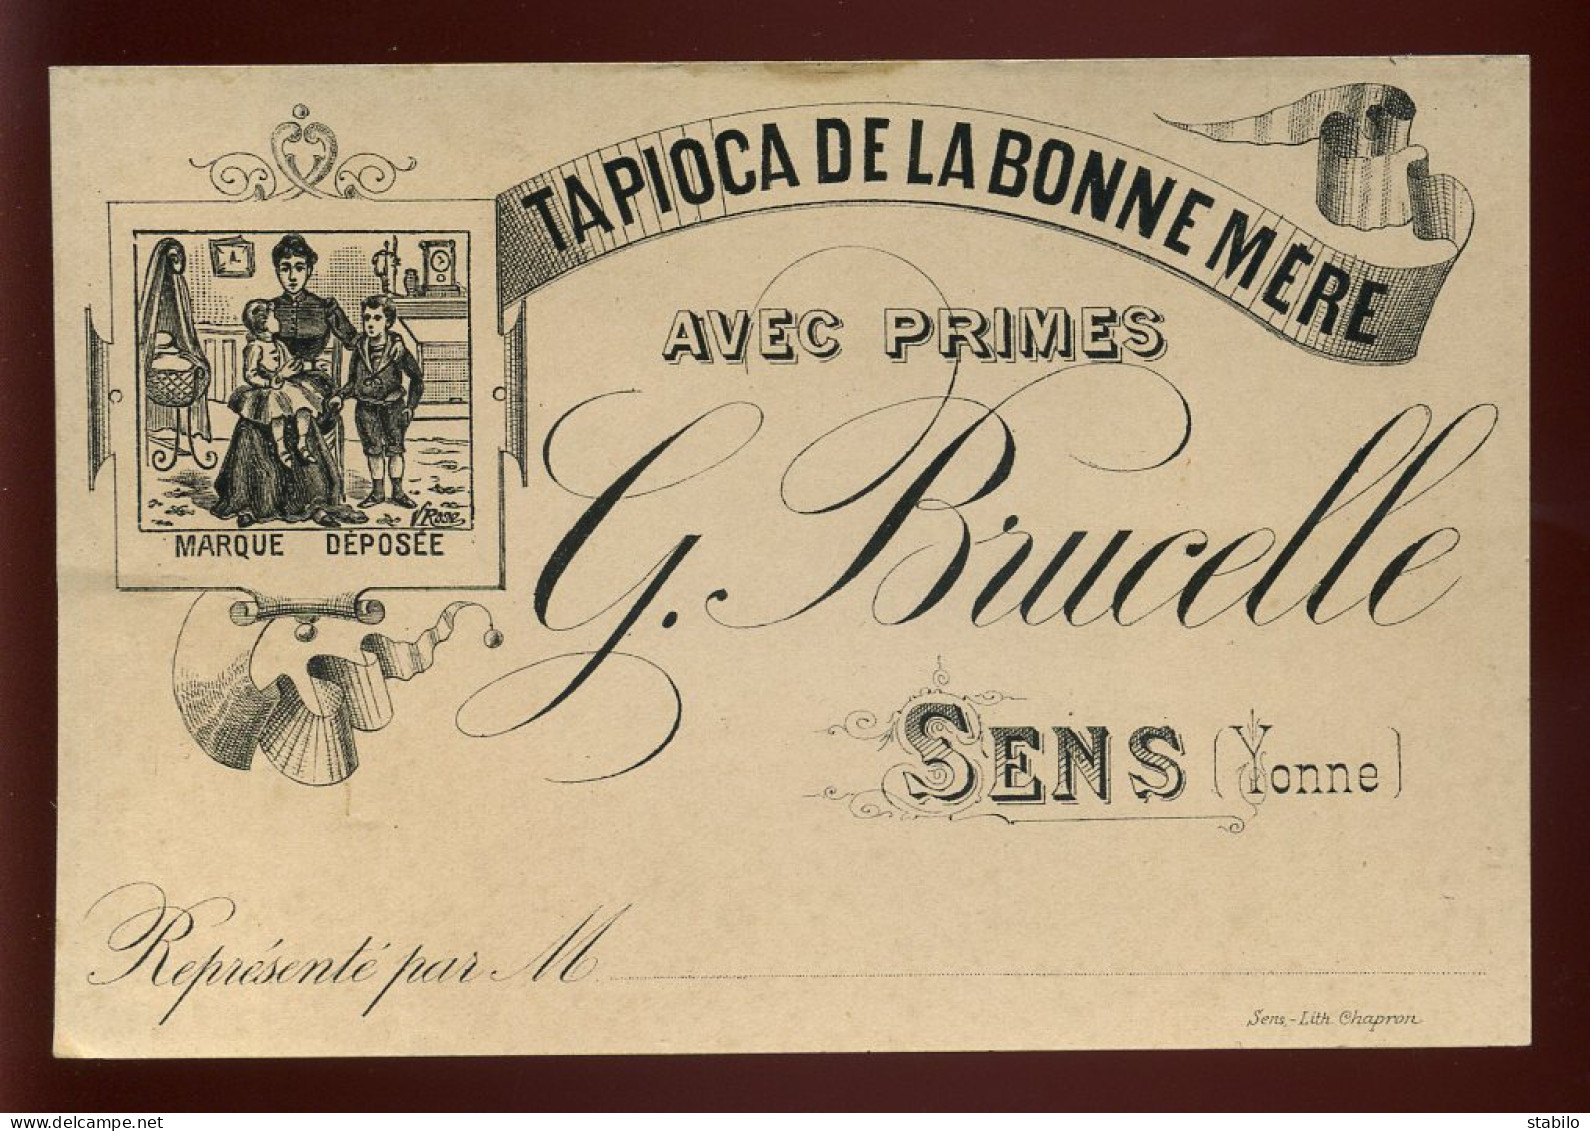 CARTE DE VISITE - SENS - TAPIOCA DE LA BONNE-MERE "G. BRUCELLE" - Visitenkarten